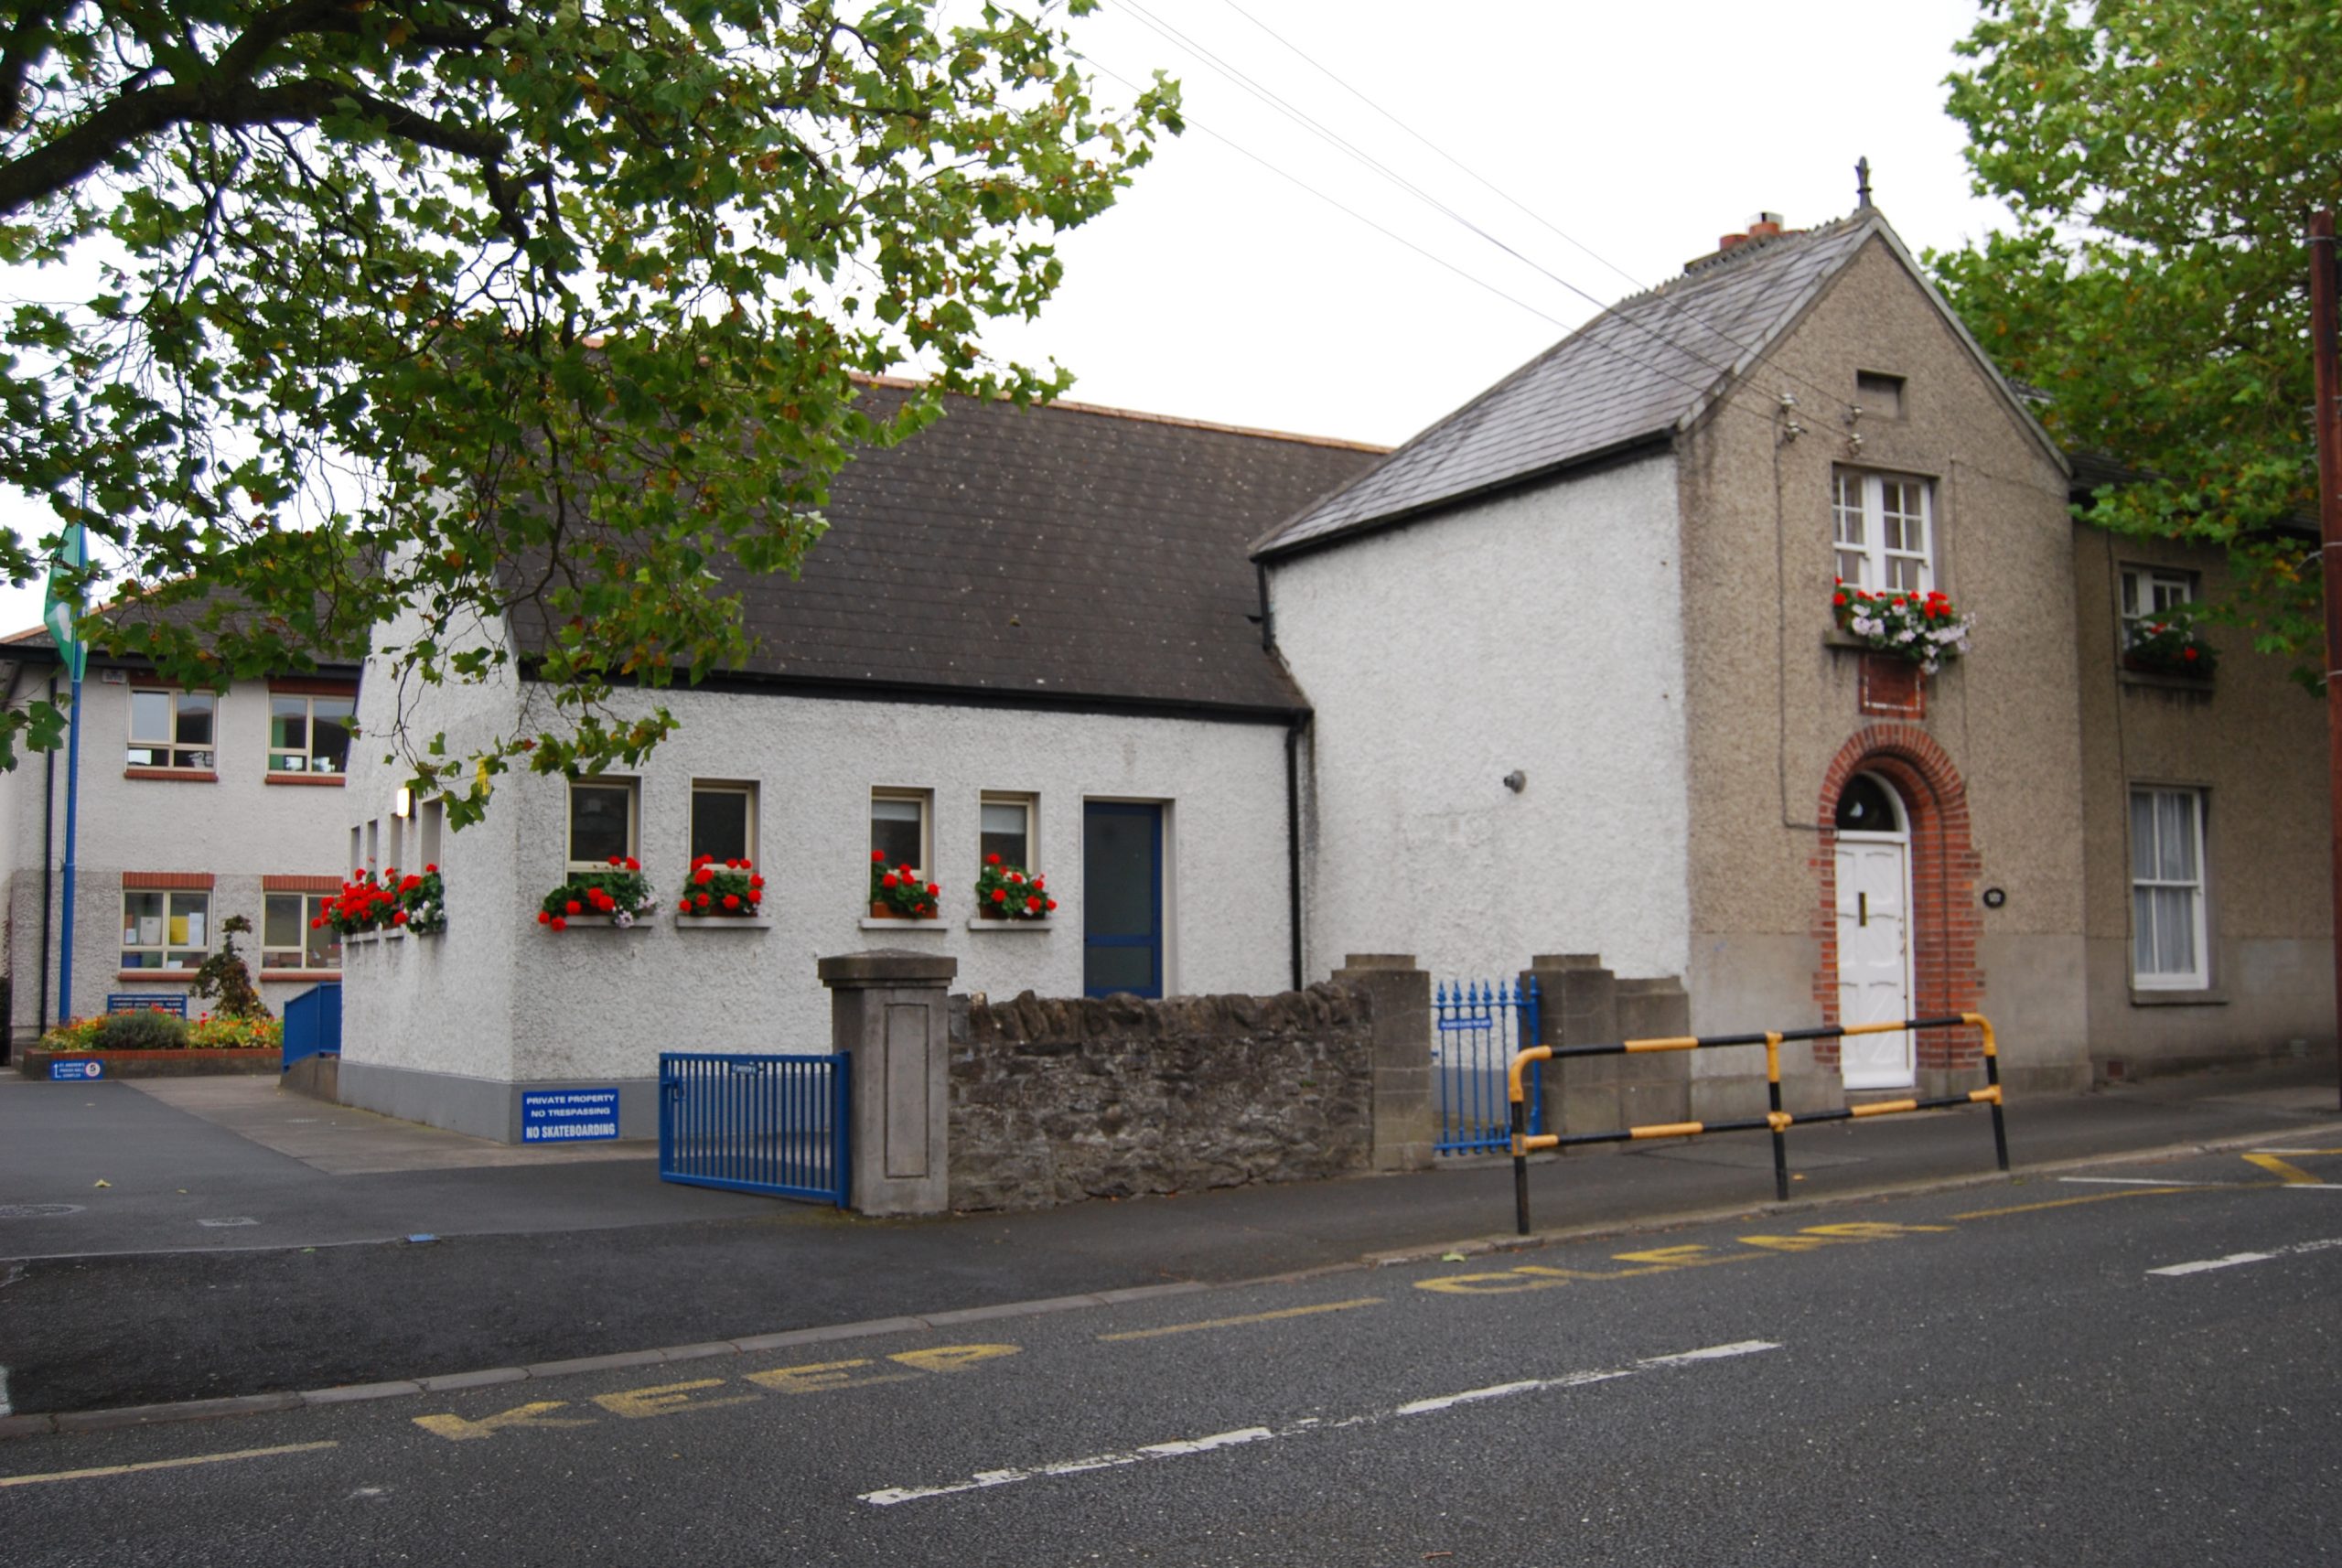 St. Andrews National School, Malahide, Dublin